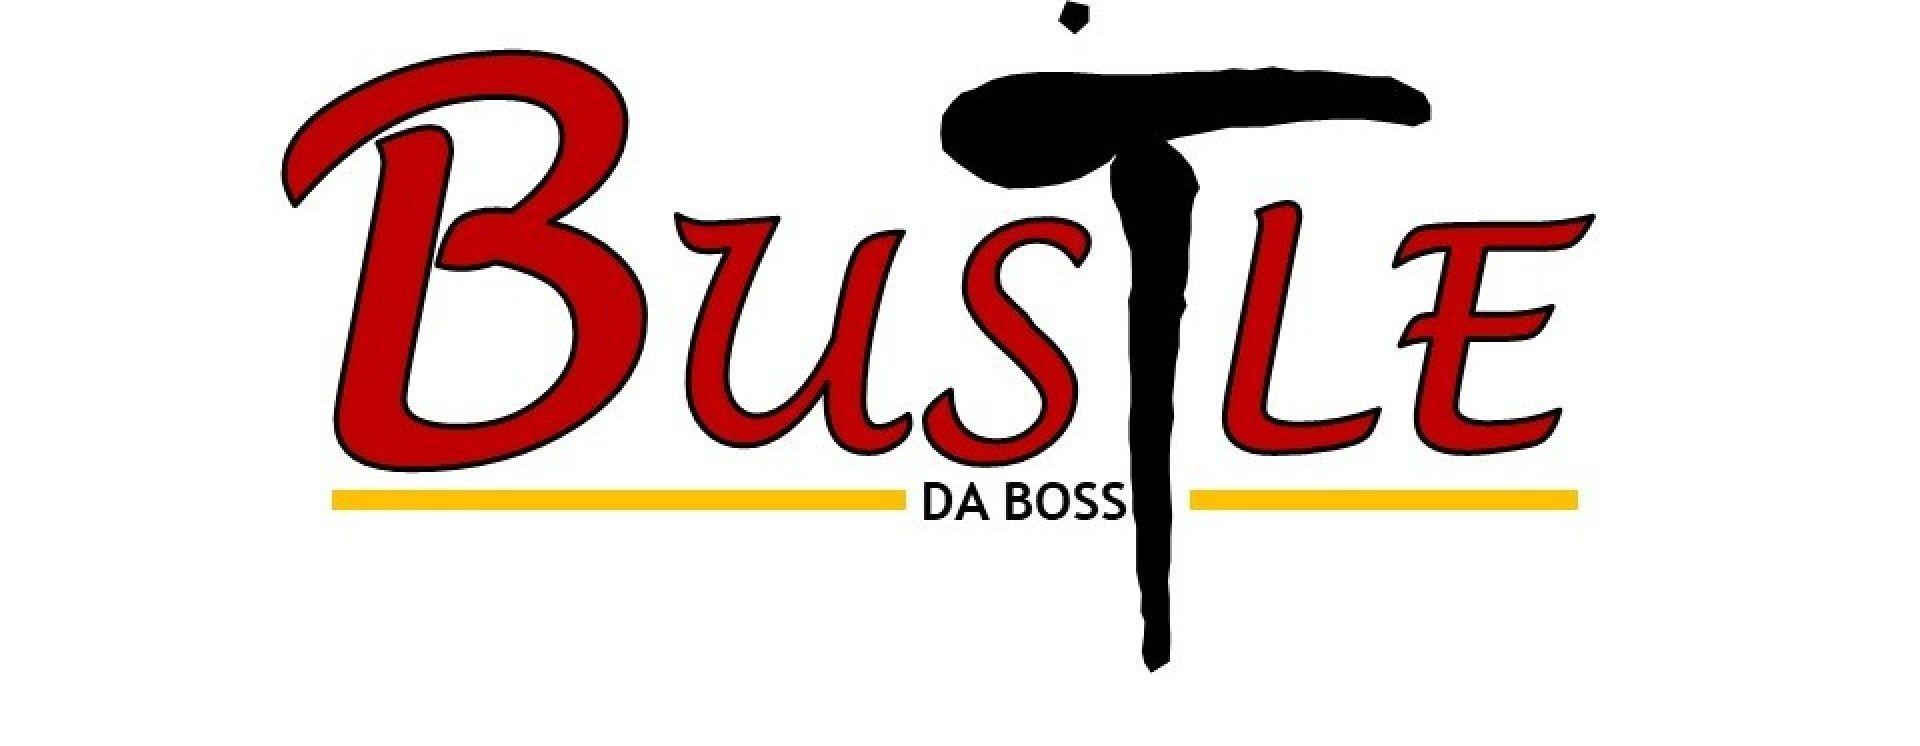 Bustle Logo - Keorata kesa fetse (Prod. by Bustle T)